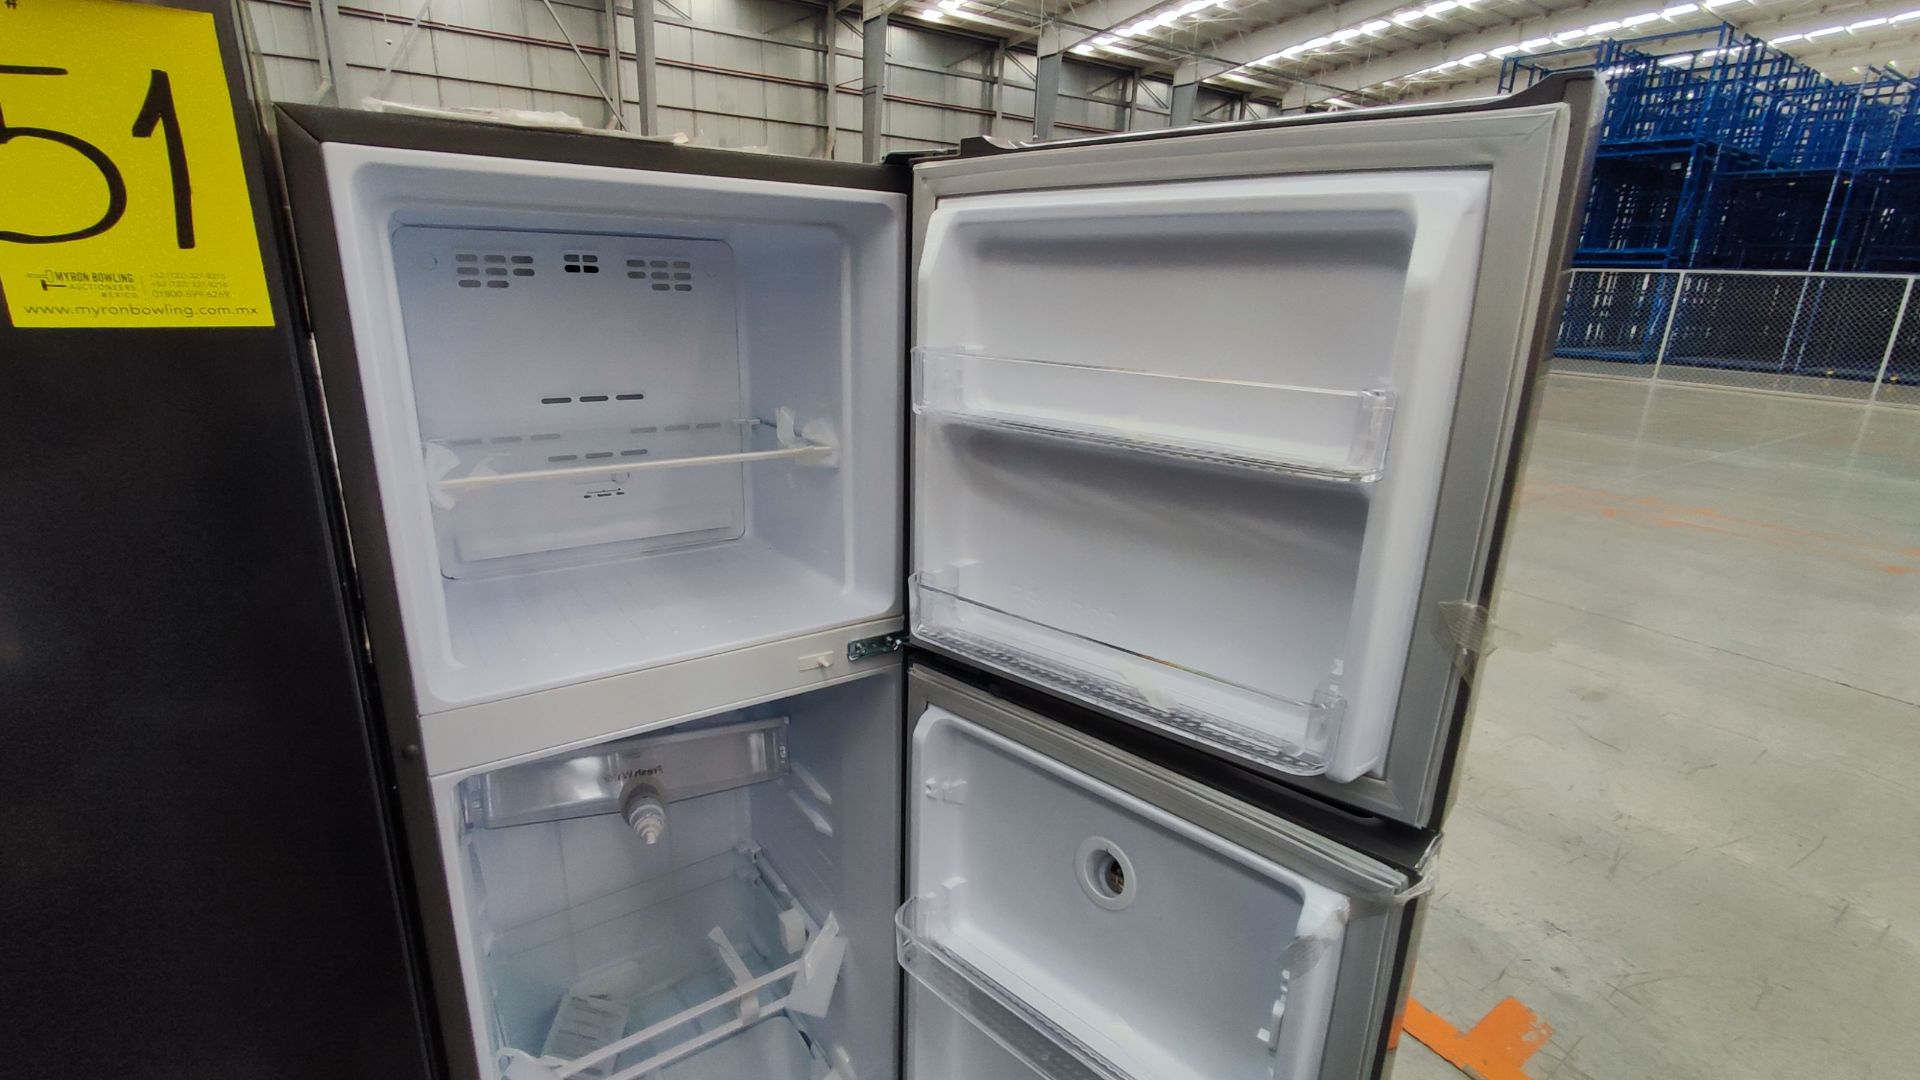 1 Refrigerador Marca Winia, Modelo DFR25210GMDX, Serie MR225N07610604, Color Gris Detalles Estético - Image 4 of 11